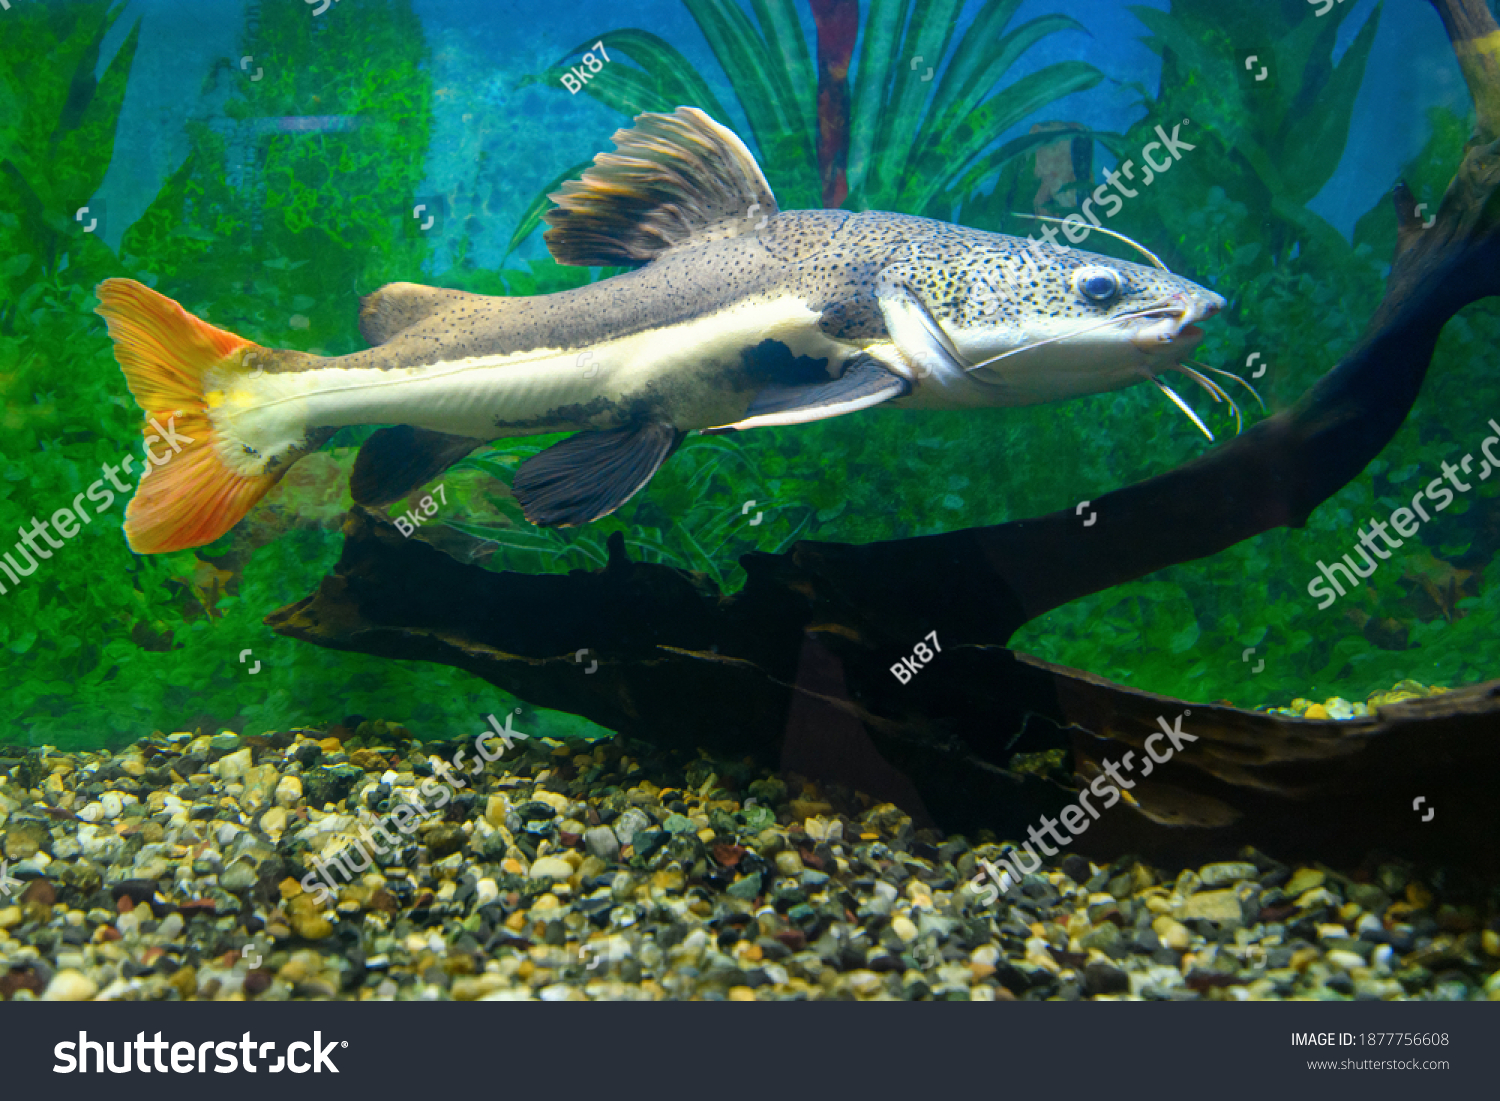 Red-tailed catfish in the aquarium. Redtail catfish  (Phractocephalus hemioliopterus) #1877756608